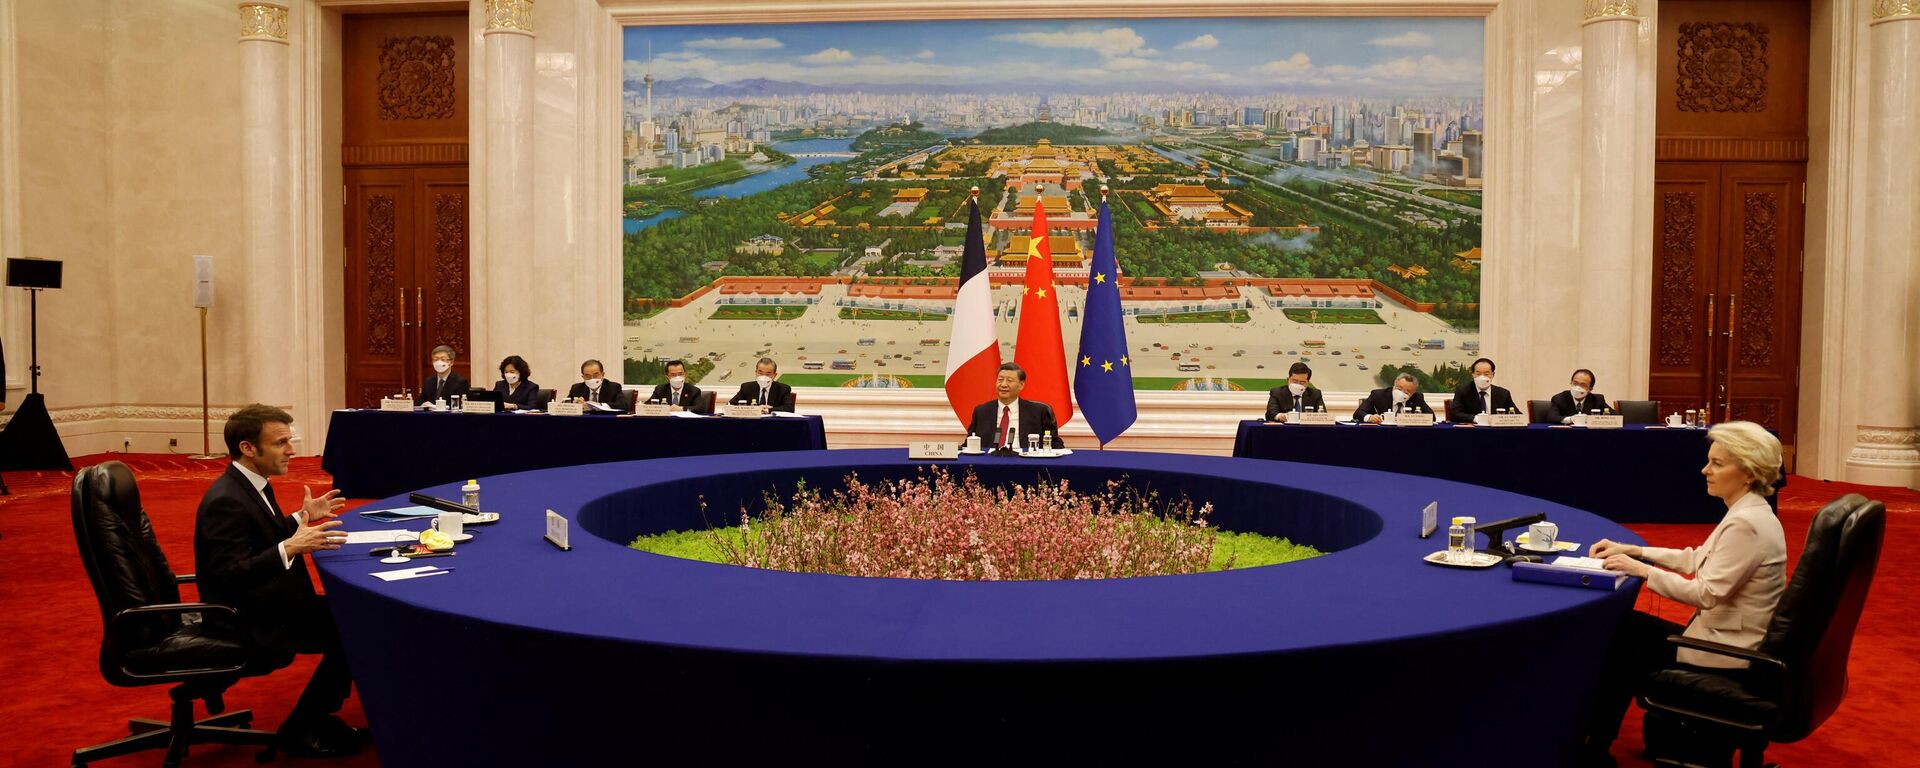 Çin Devlet Başkanı Şi Cinping, Pekin'de ağırladığı Fransa Cumhurbaşkanı Emmanuel Macron ve AB Komisyonu Başkanı Ursula von de Leyen ile üçlü görüşme için alışılmadık tasarımı olan bir yuvarlak masayı tercih etti.  - Sputnik Türkiye, 1920, 06.04.2023